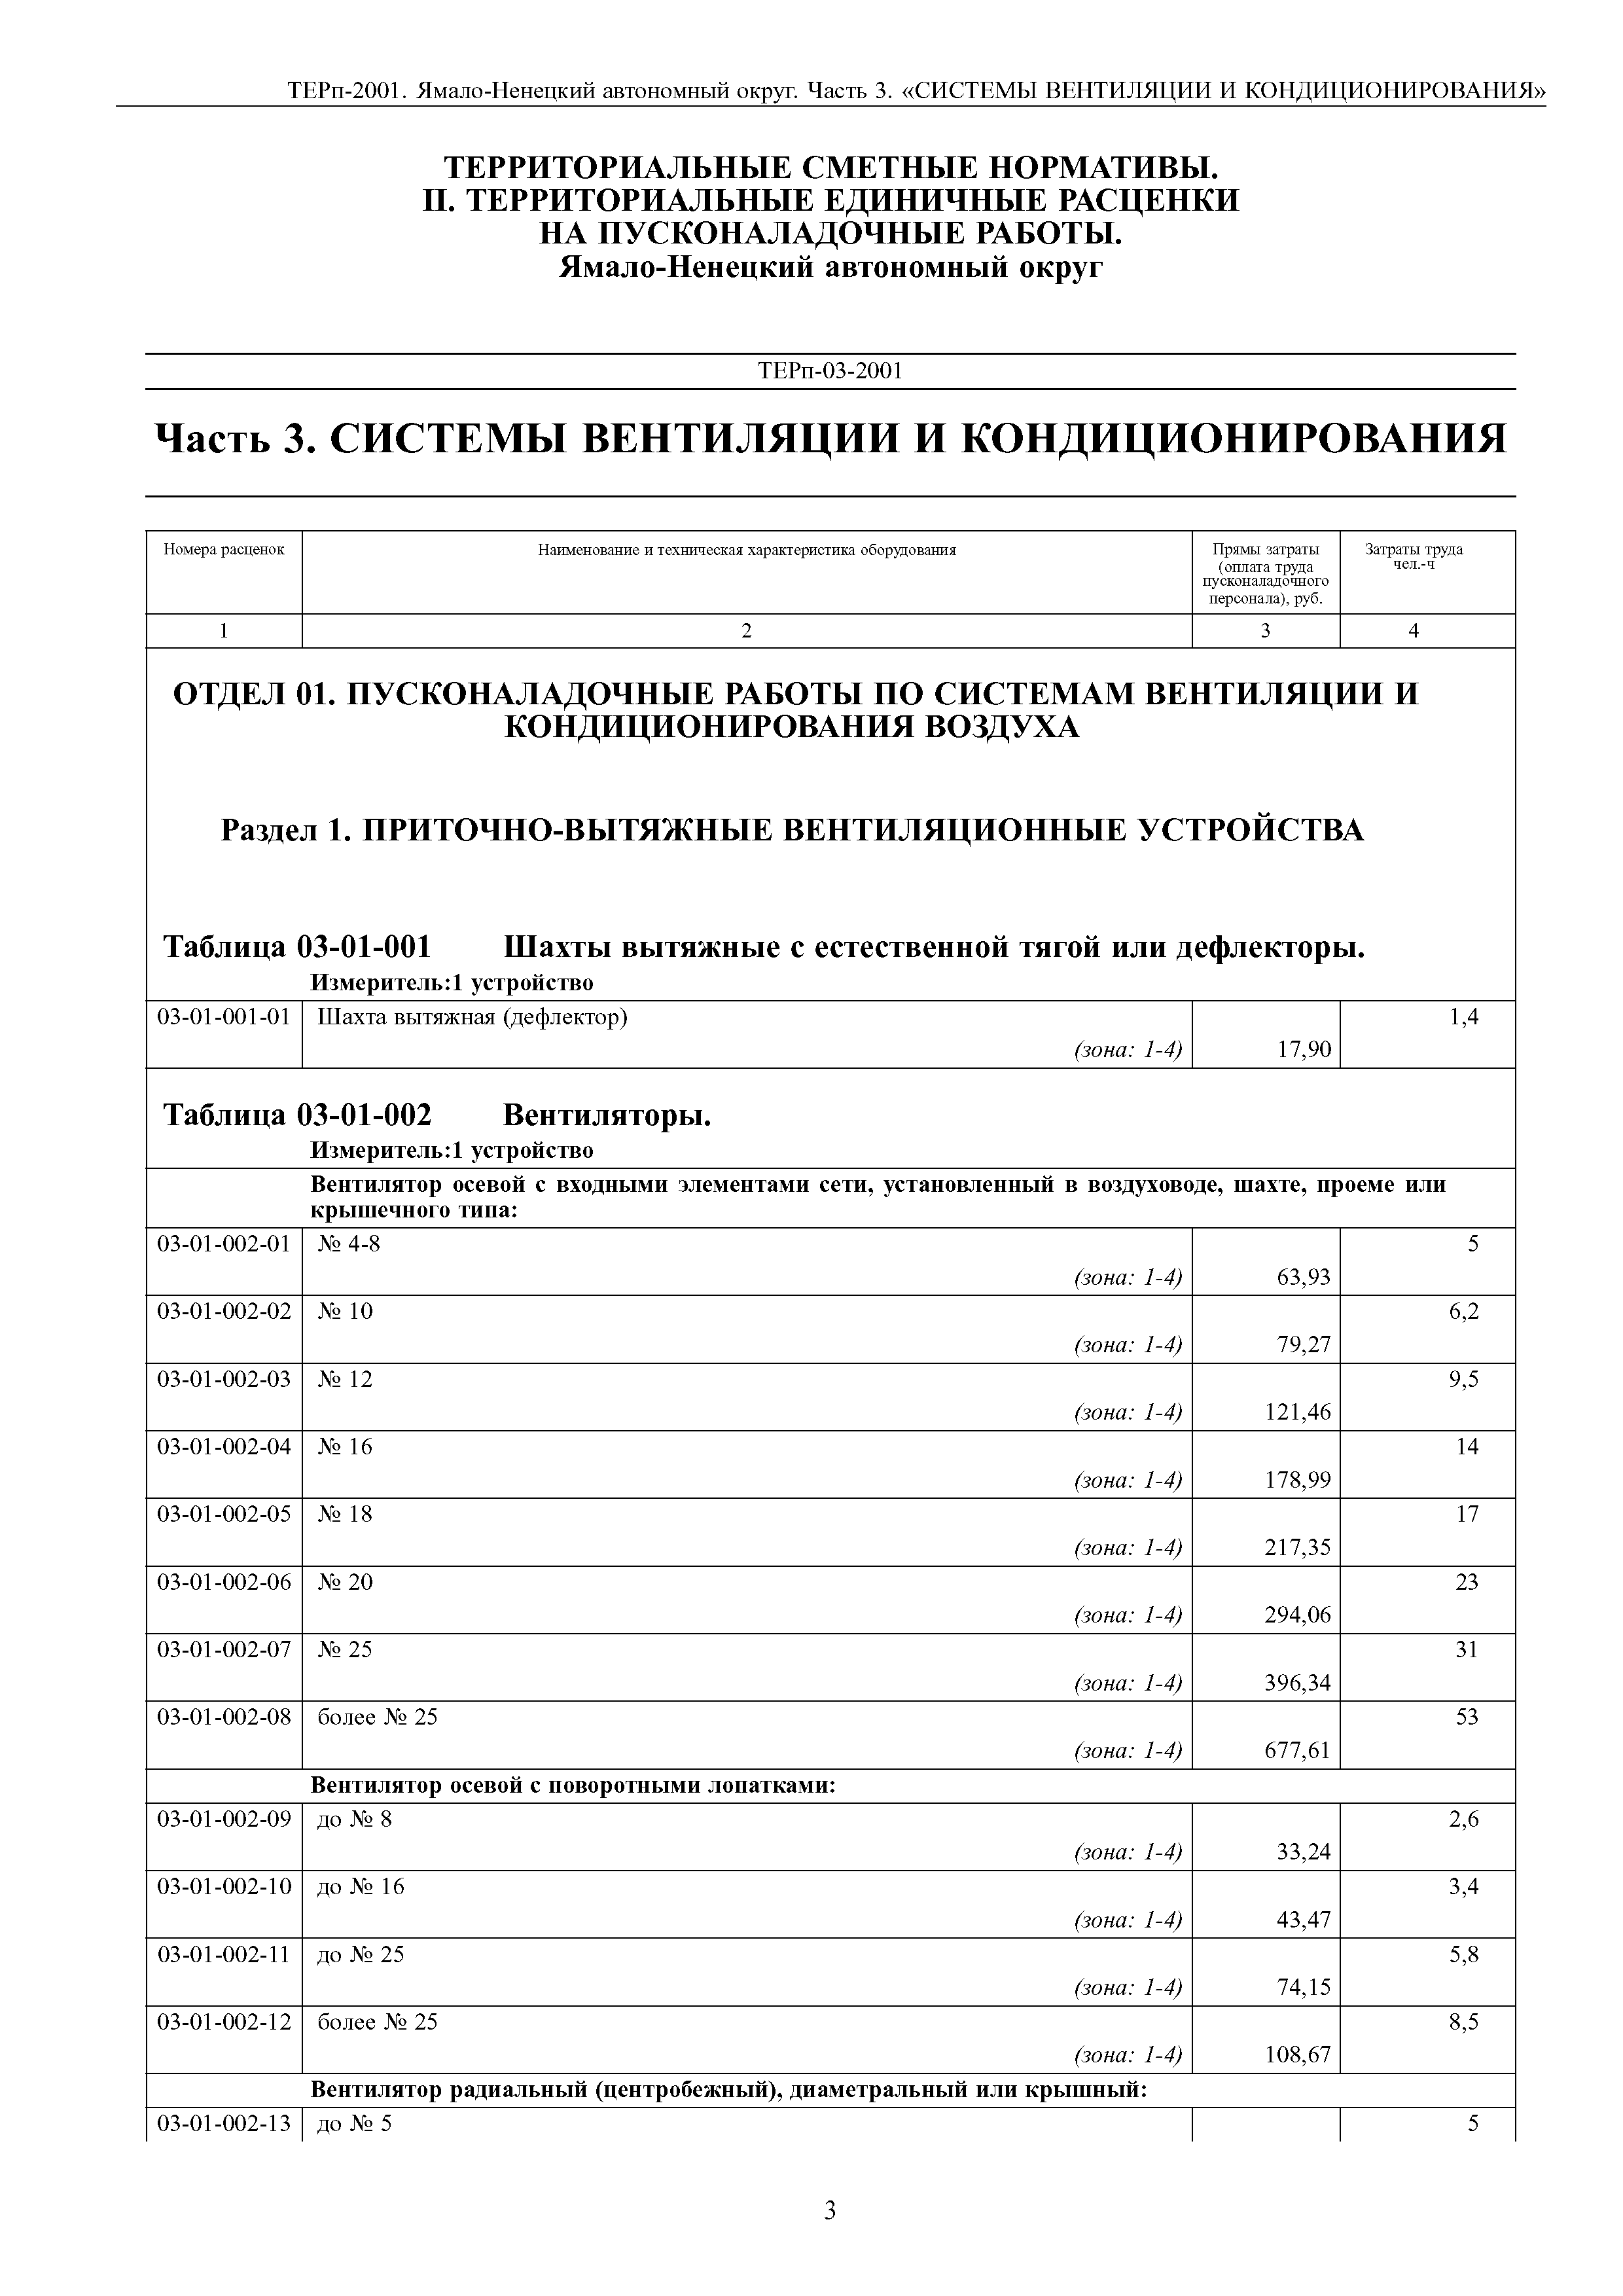 ТЕРп Ямало-Ненецкий автономный округ 81-05-03-2001